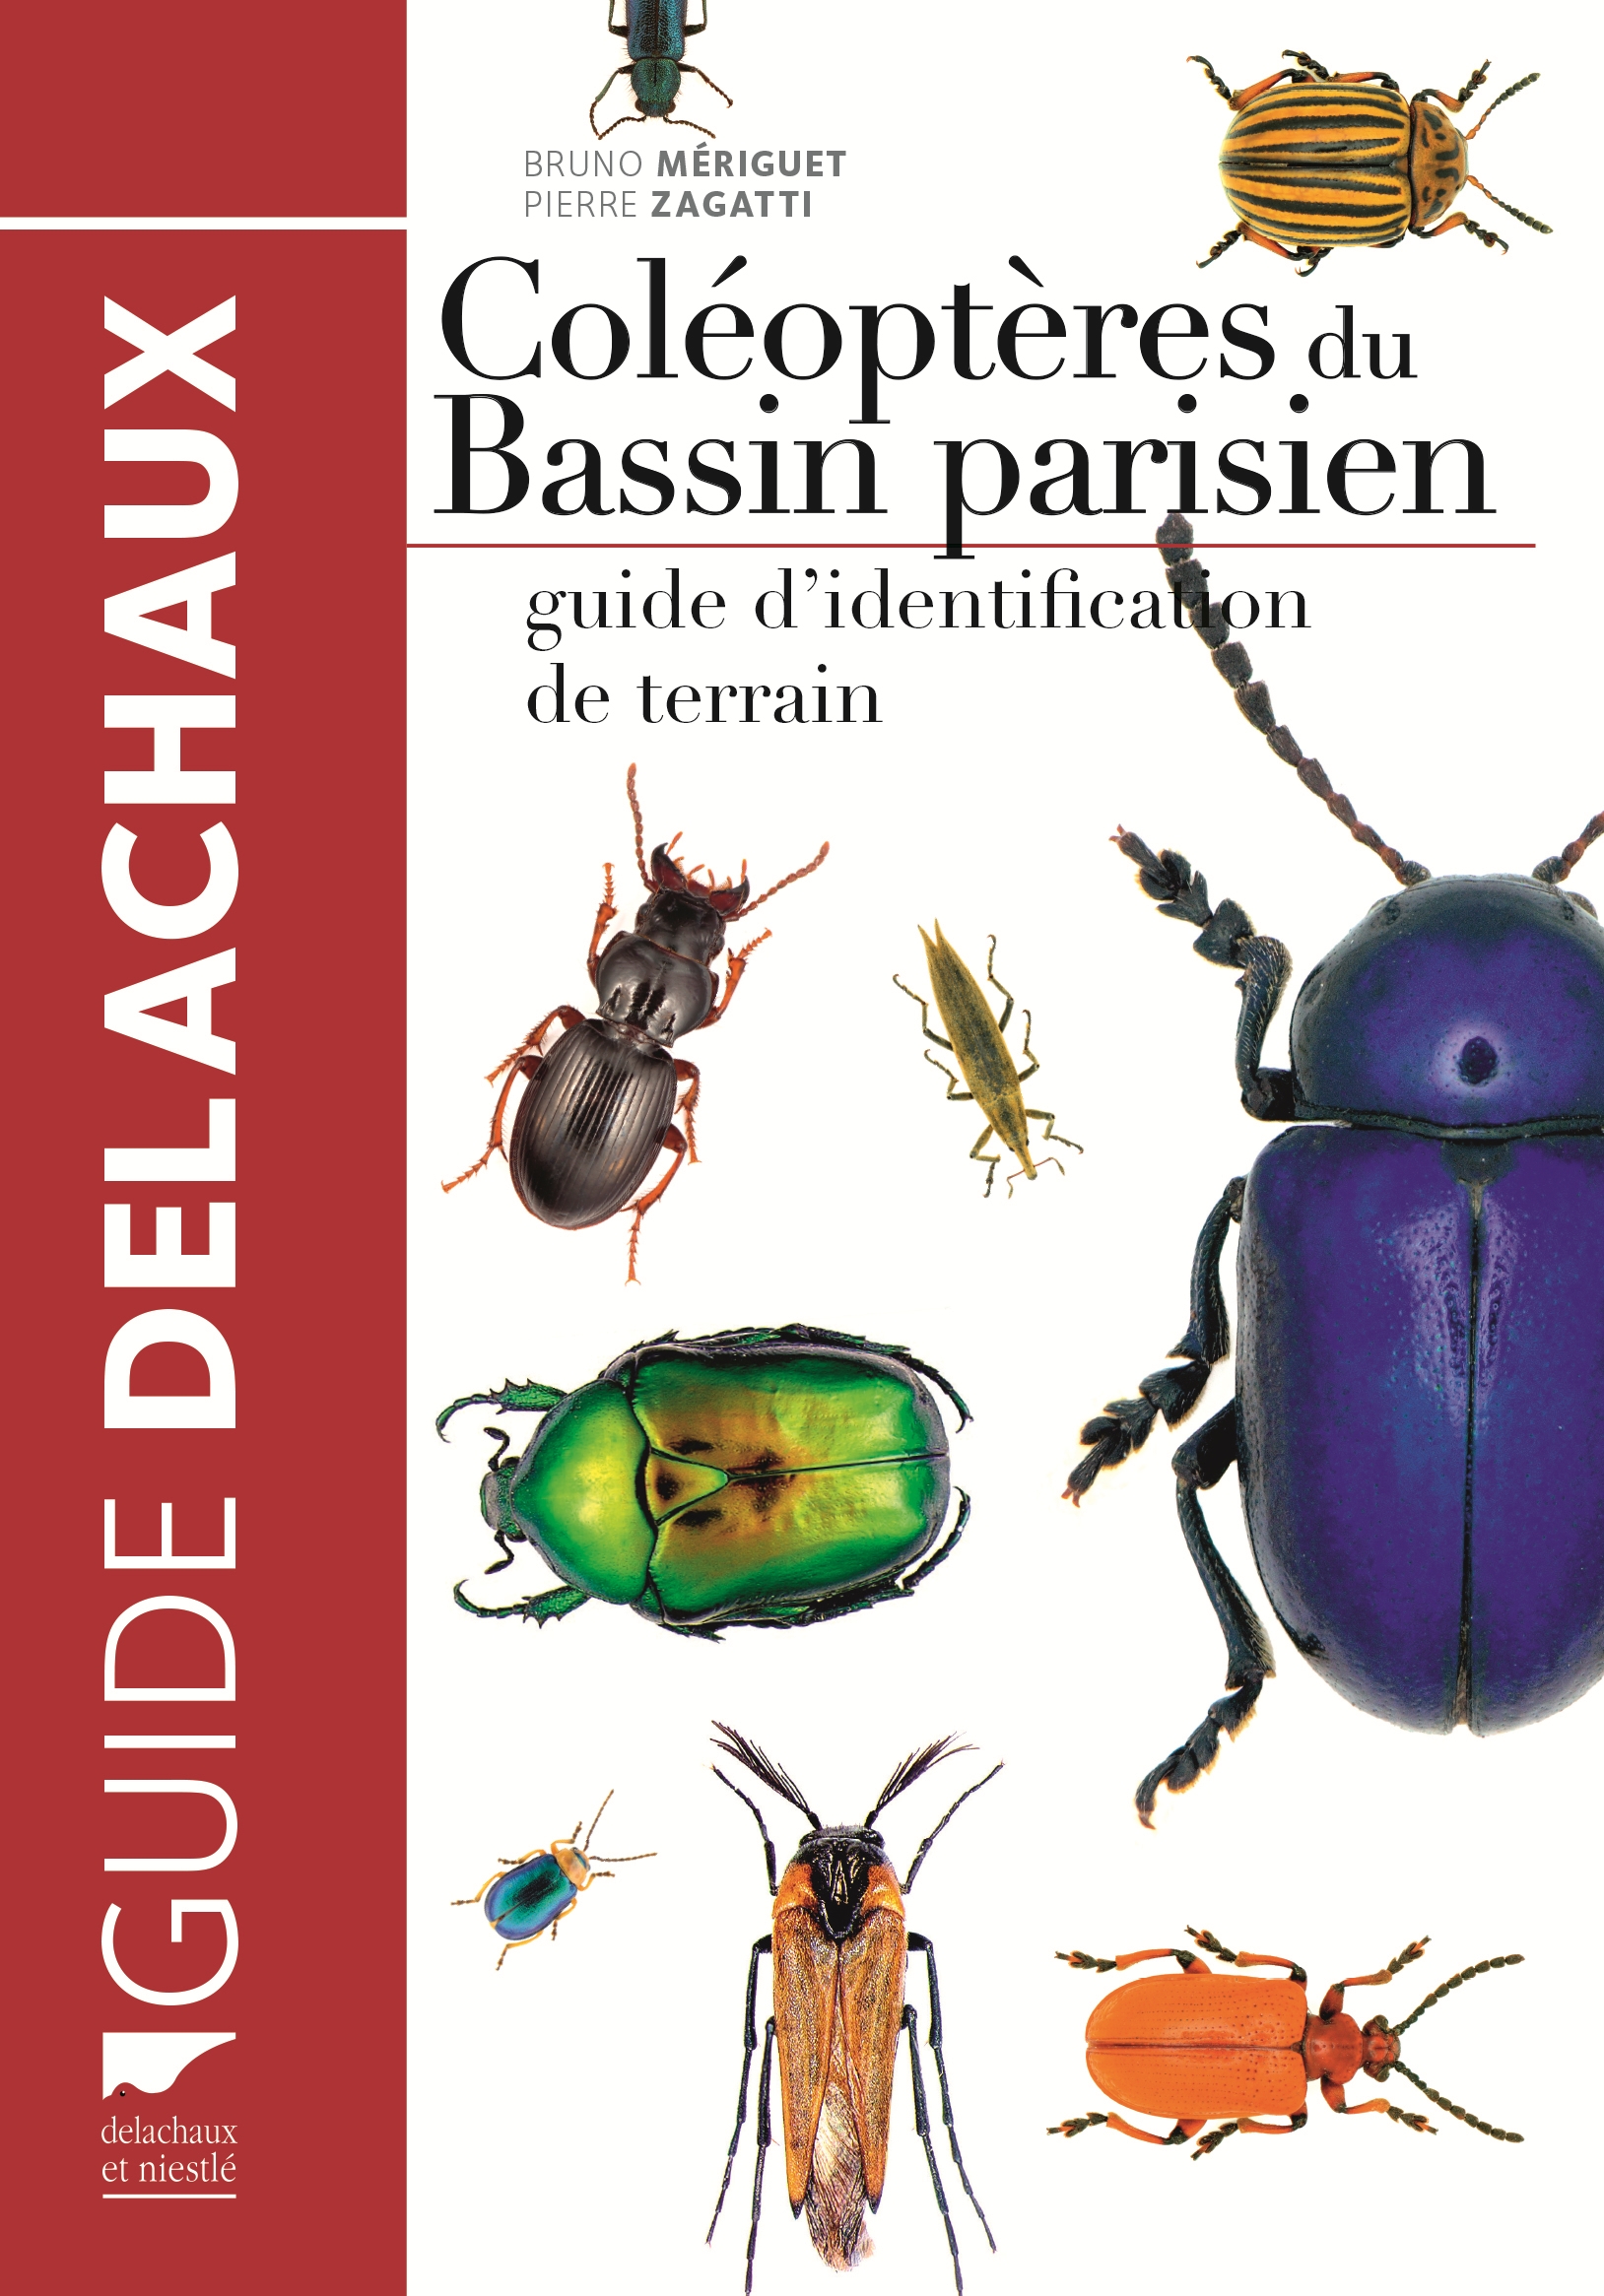 Les coléoptères du Bassin parisien : interview de Bruno Mériguet